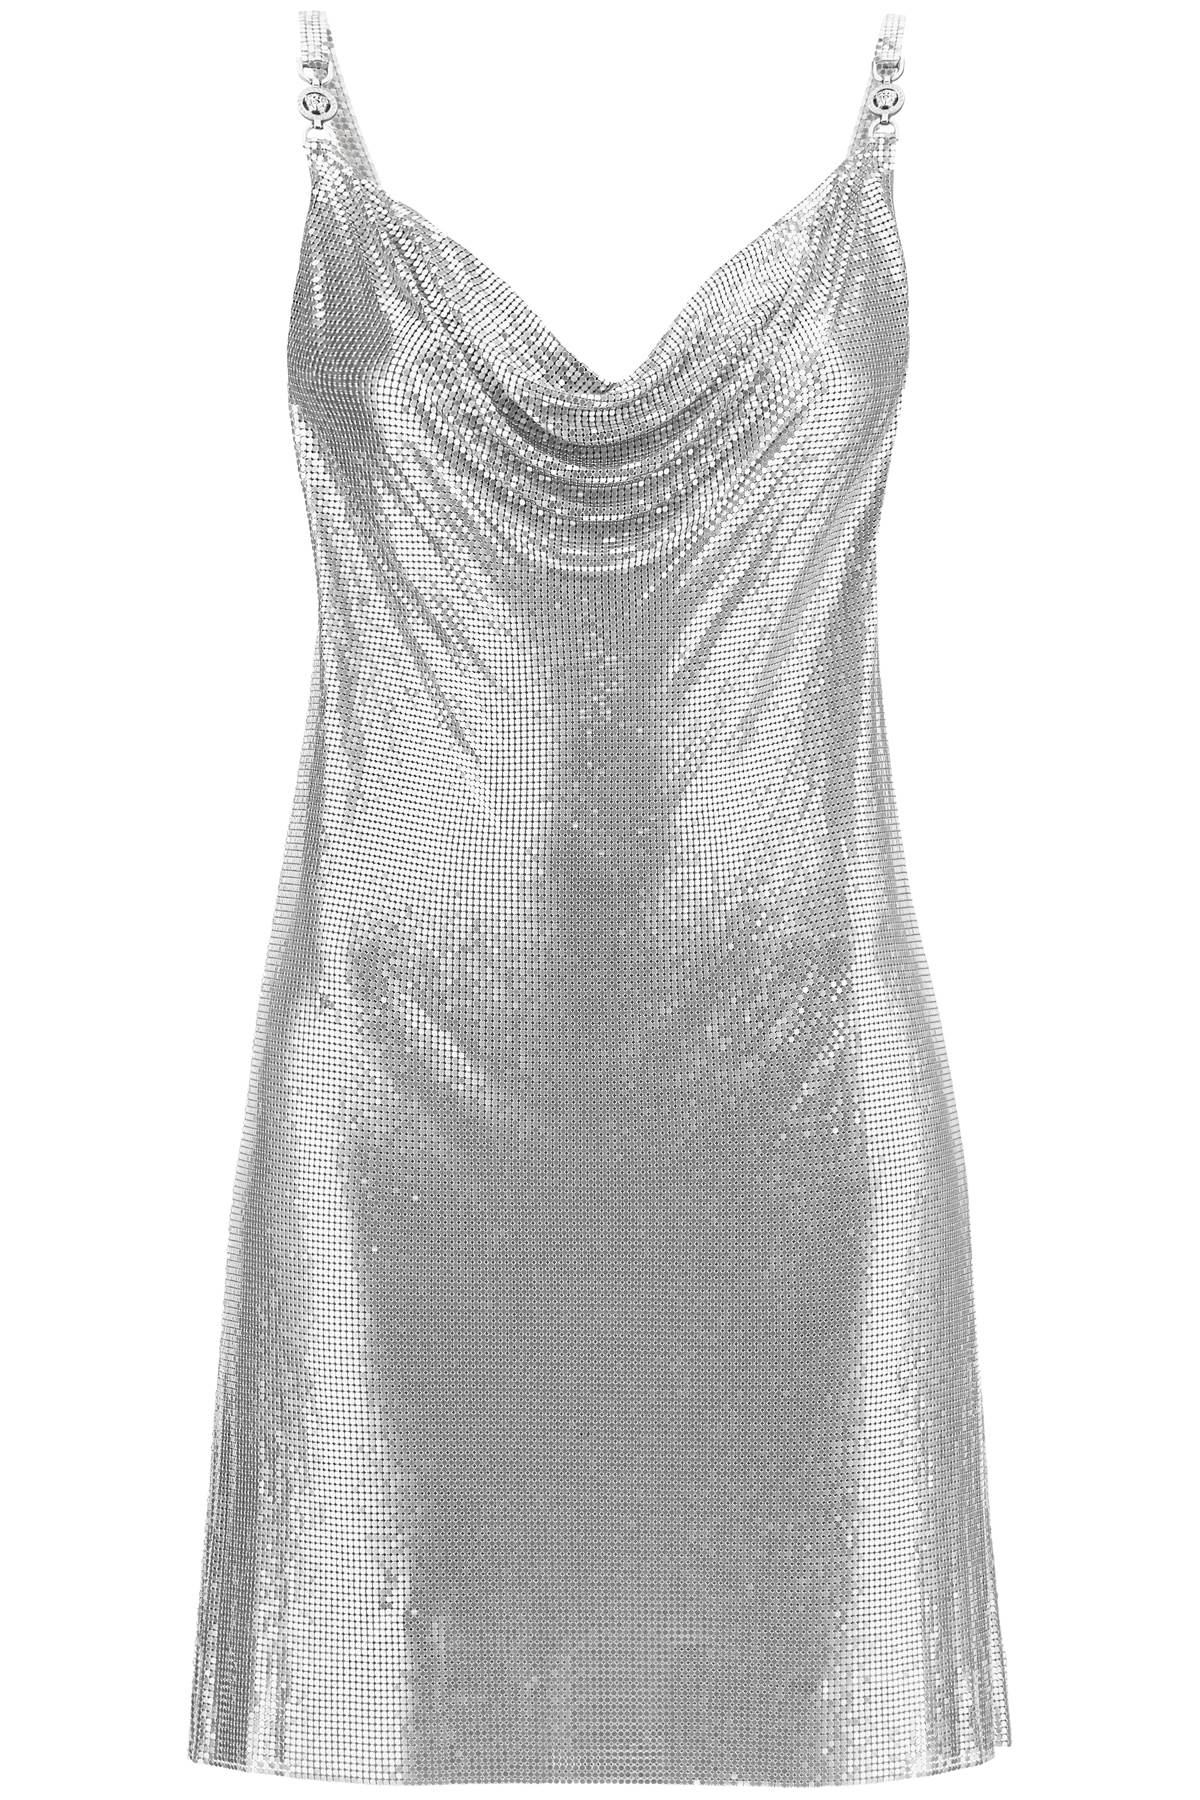 Silver Metal Dress